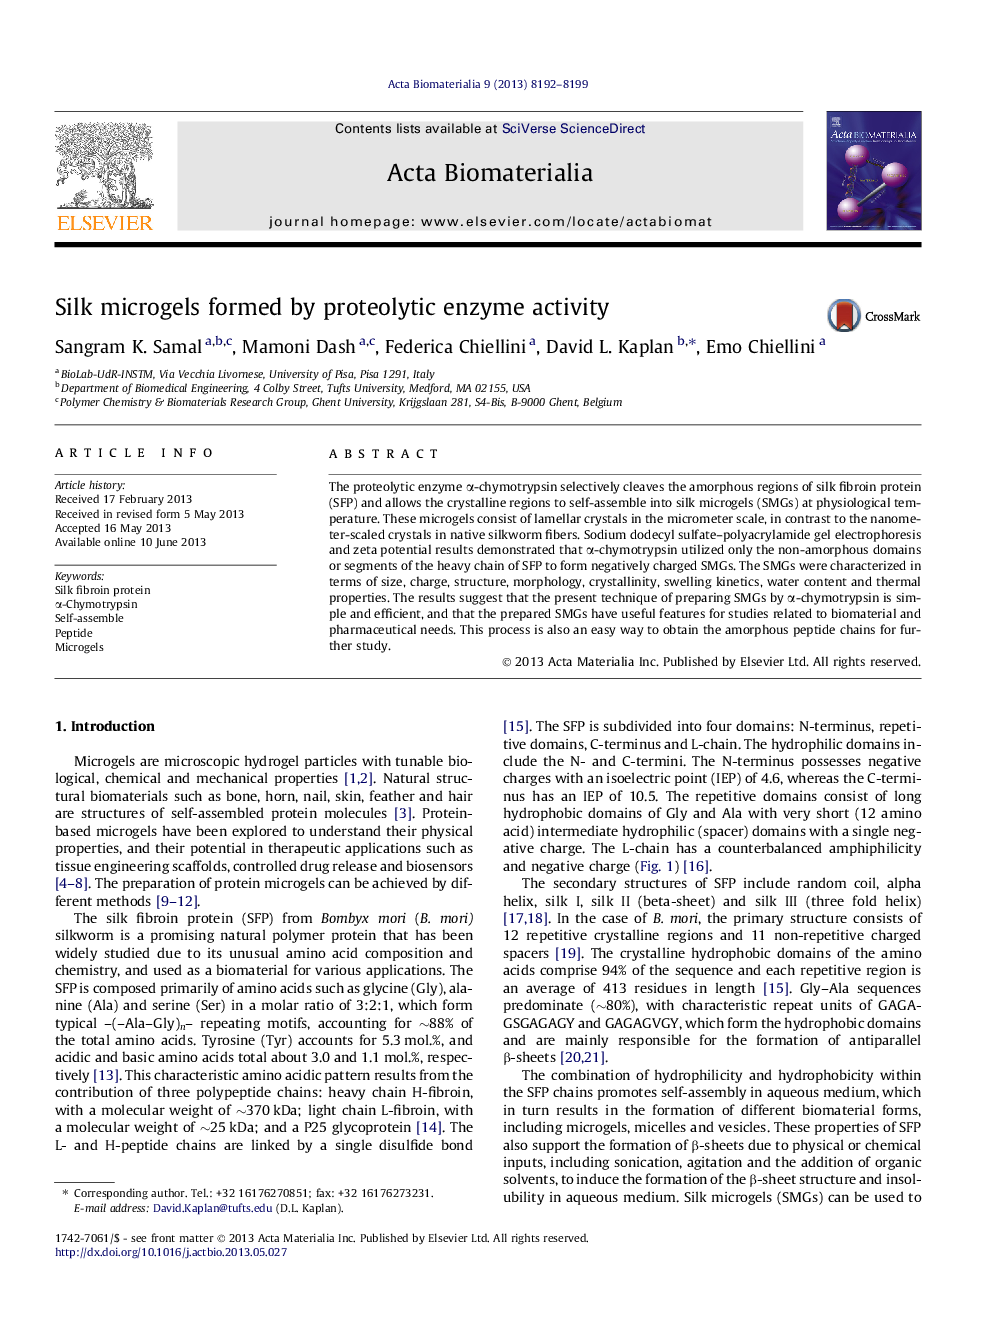 میکروگللوی ابریشم با فعالیت آنزیم پروتئولیتیک تشکیل شده است 